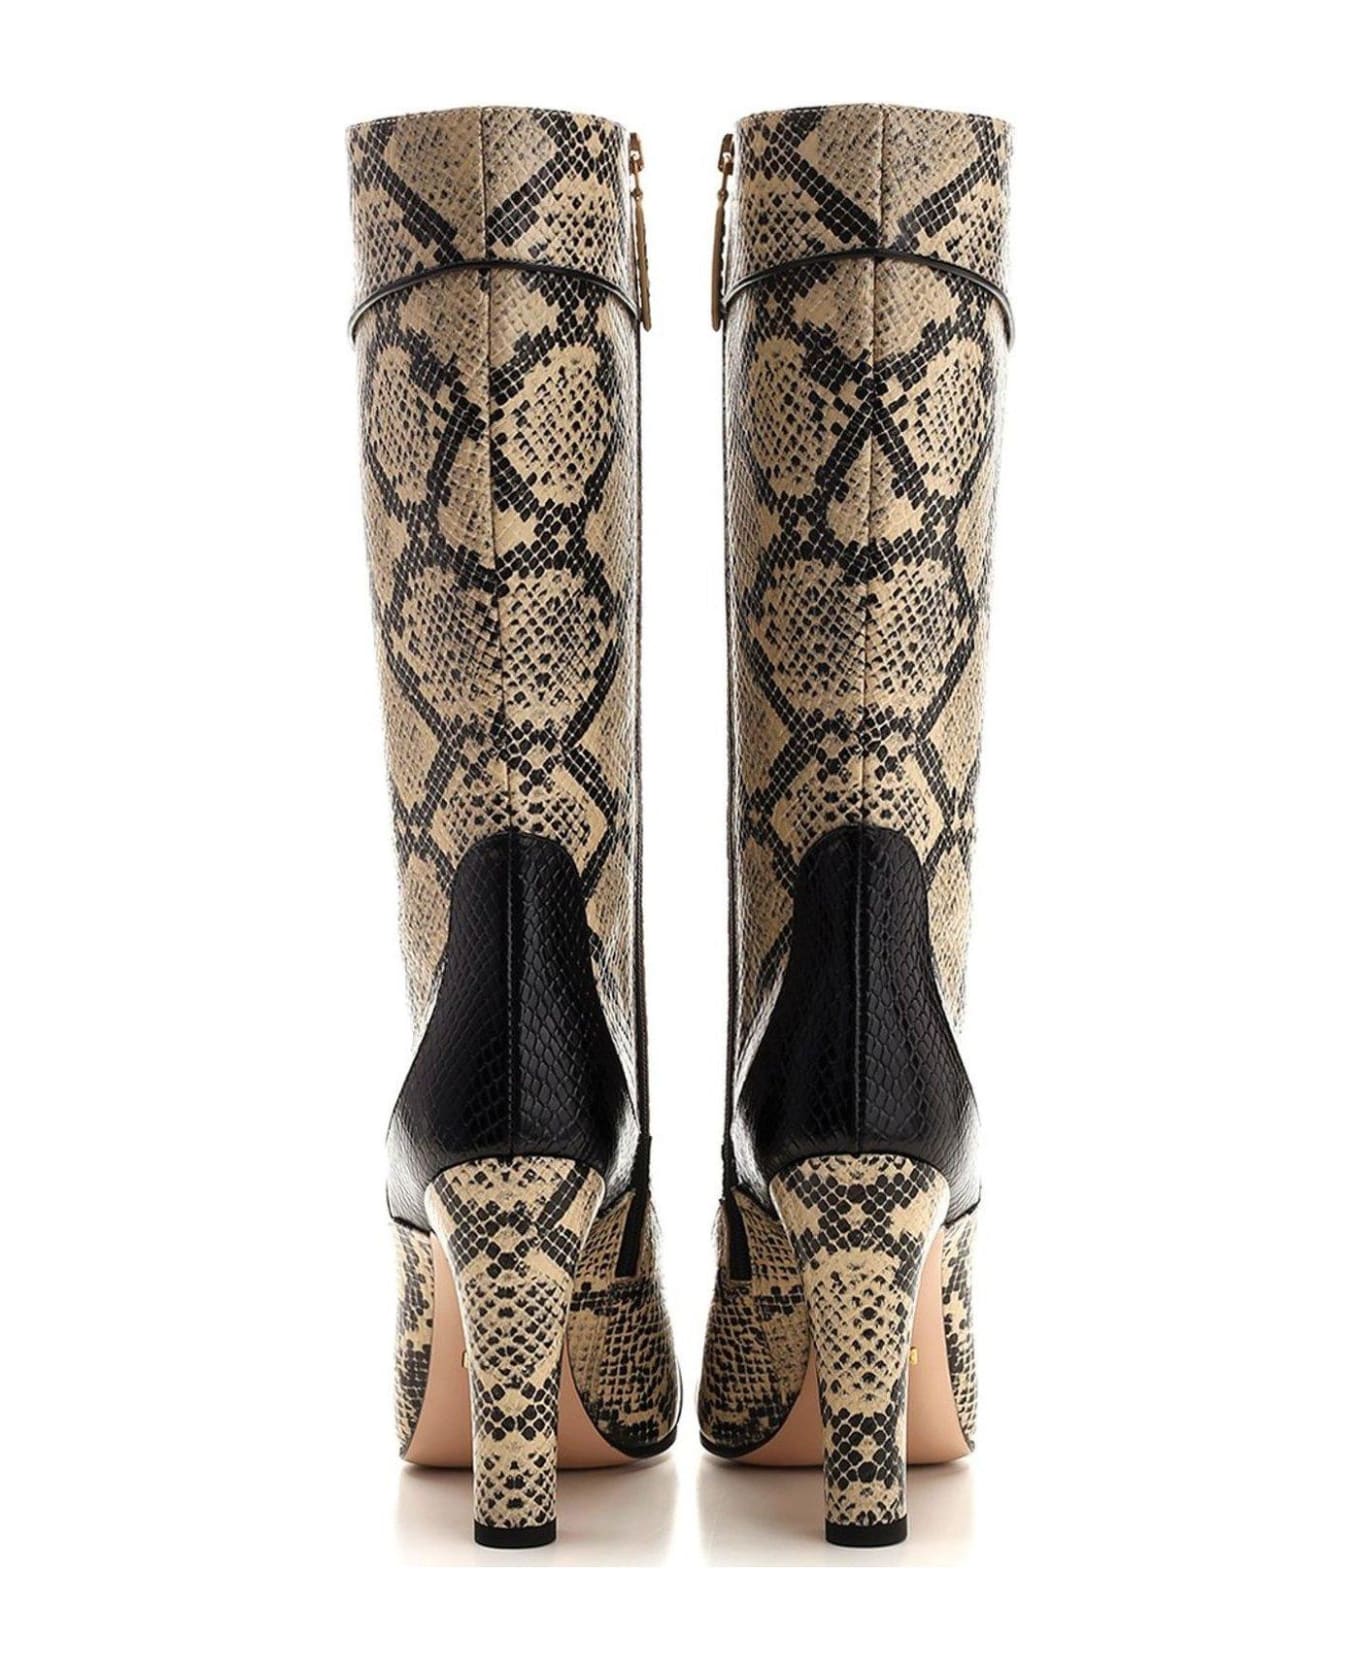 Gucci Hihg Heel Printed Boots - Beige/Nero